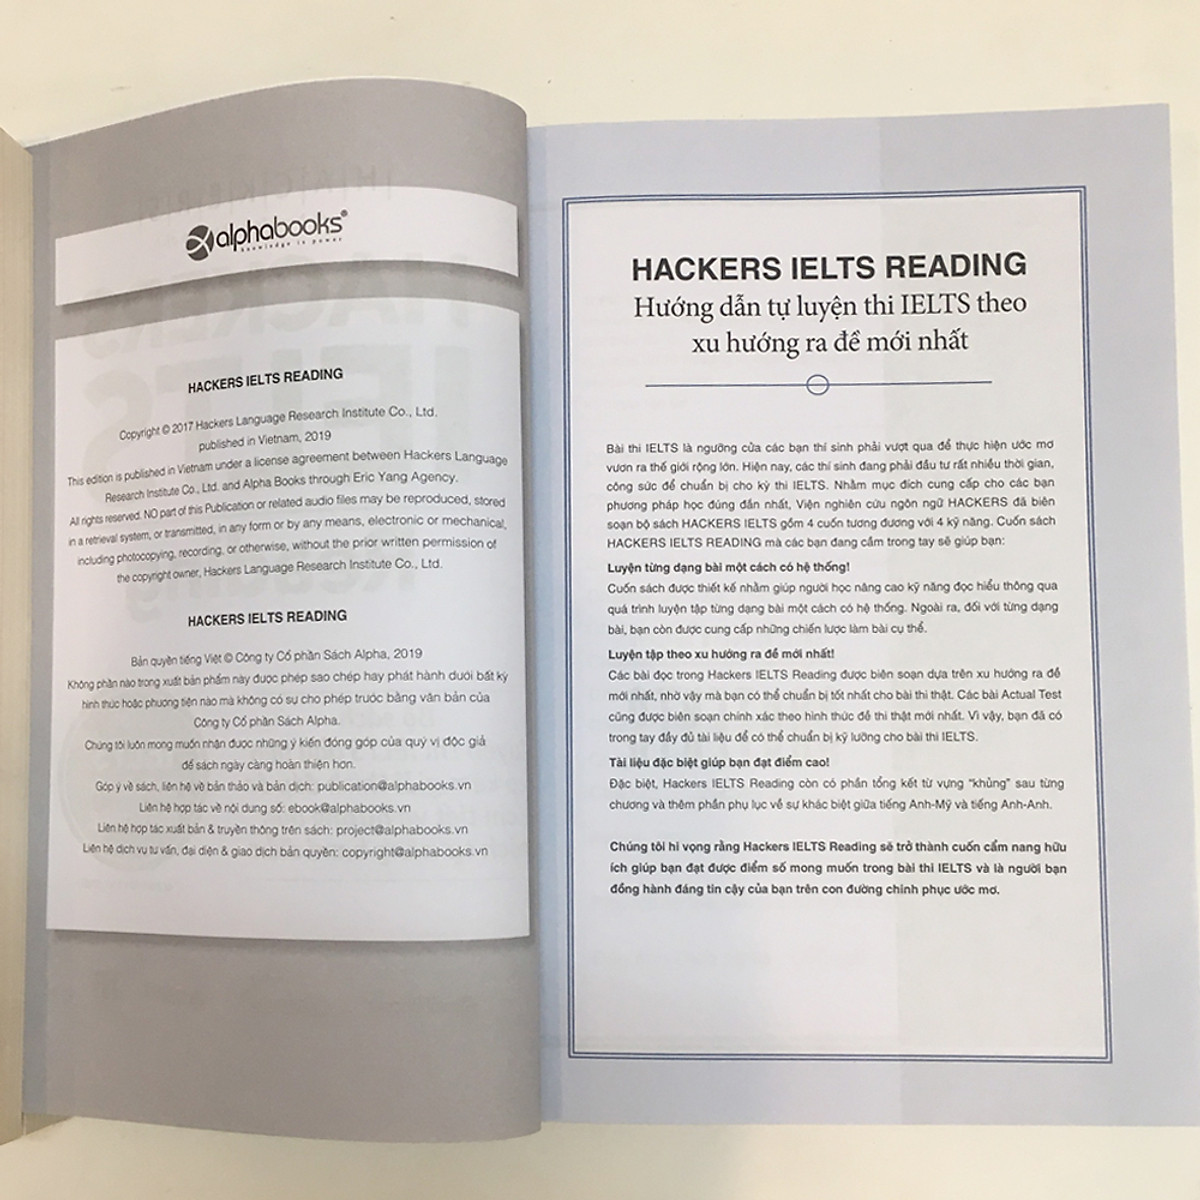 Combo 2 Cuốn Sách Luyện Thi IELTS: Hackers IELTS Reading + Hackers IELTS Writing - Tái Bản Năm 2021 (Tặng Kèm Portcard ta)